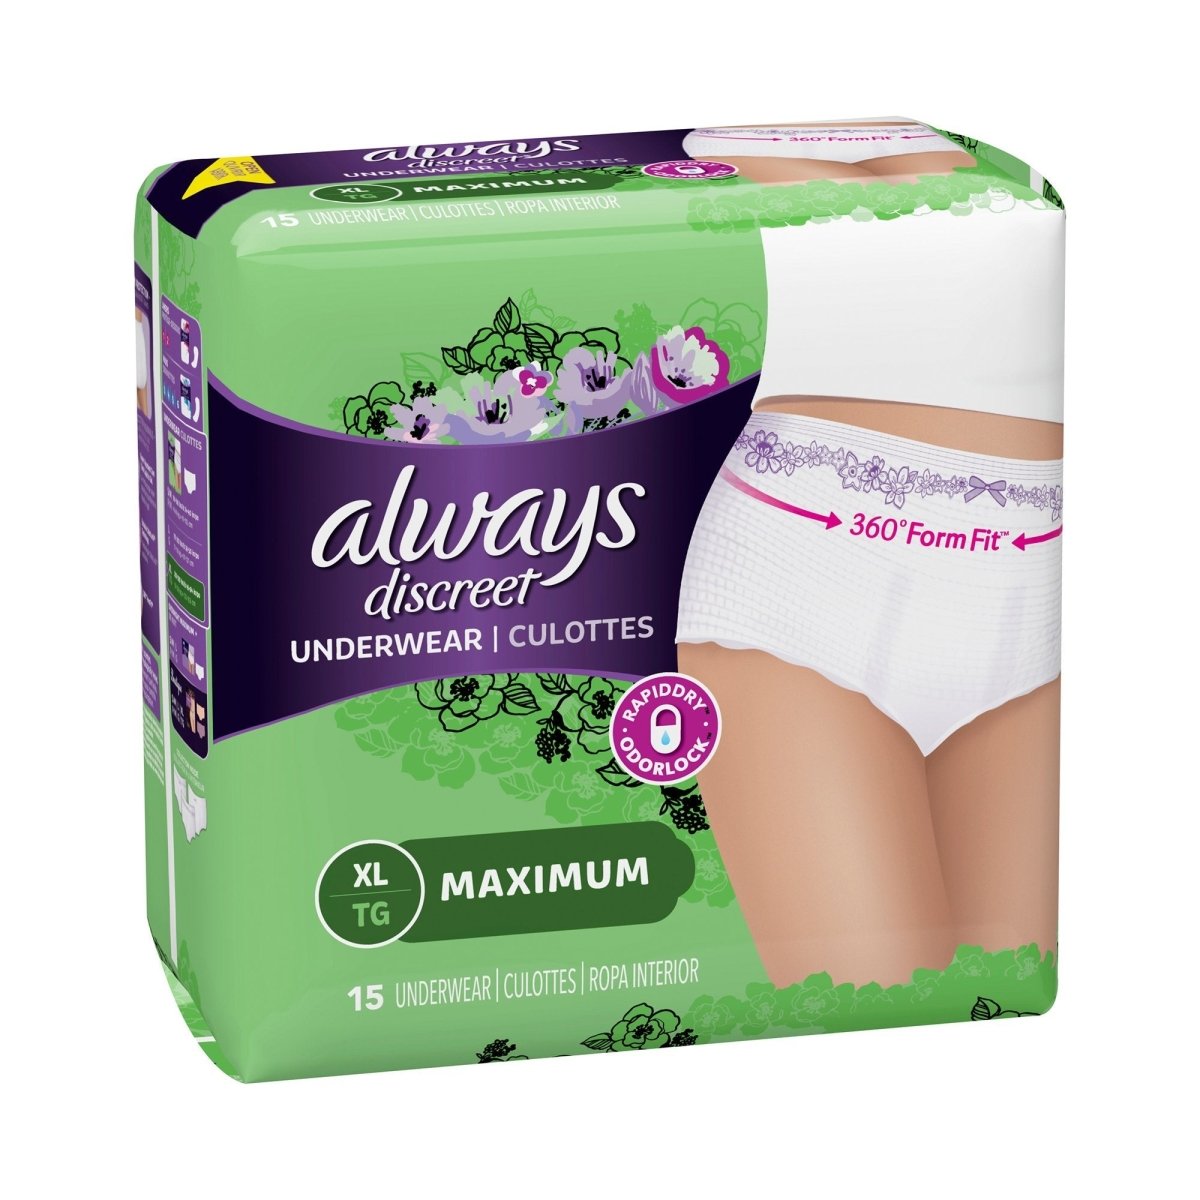 Shop Women's Underwear for Older Ladies